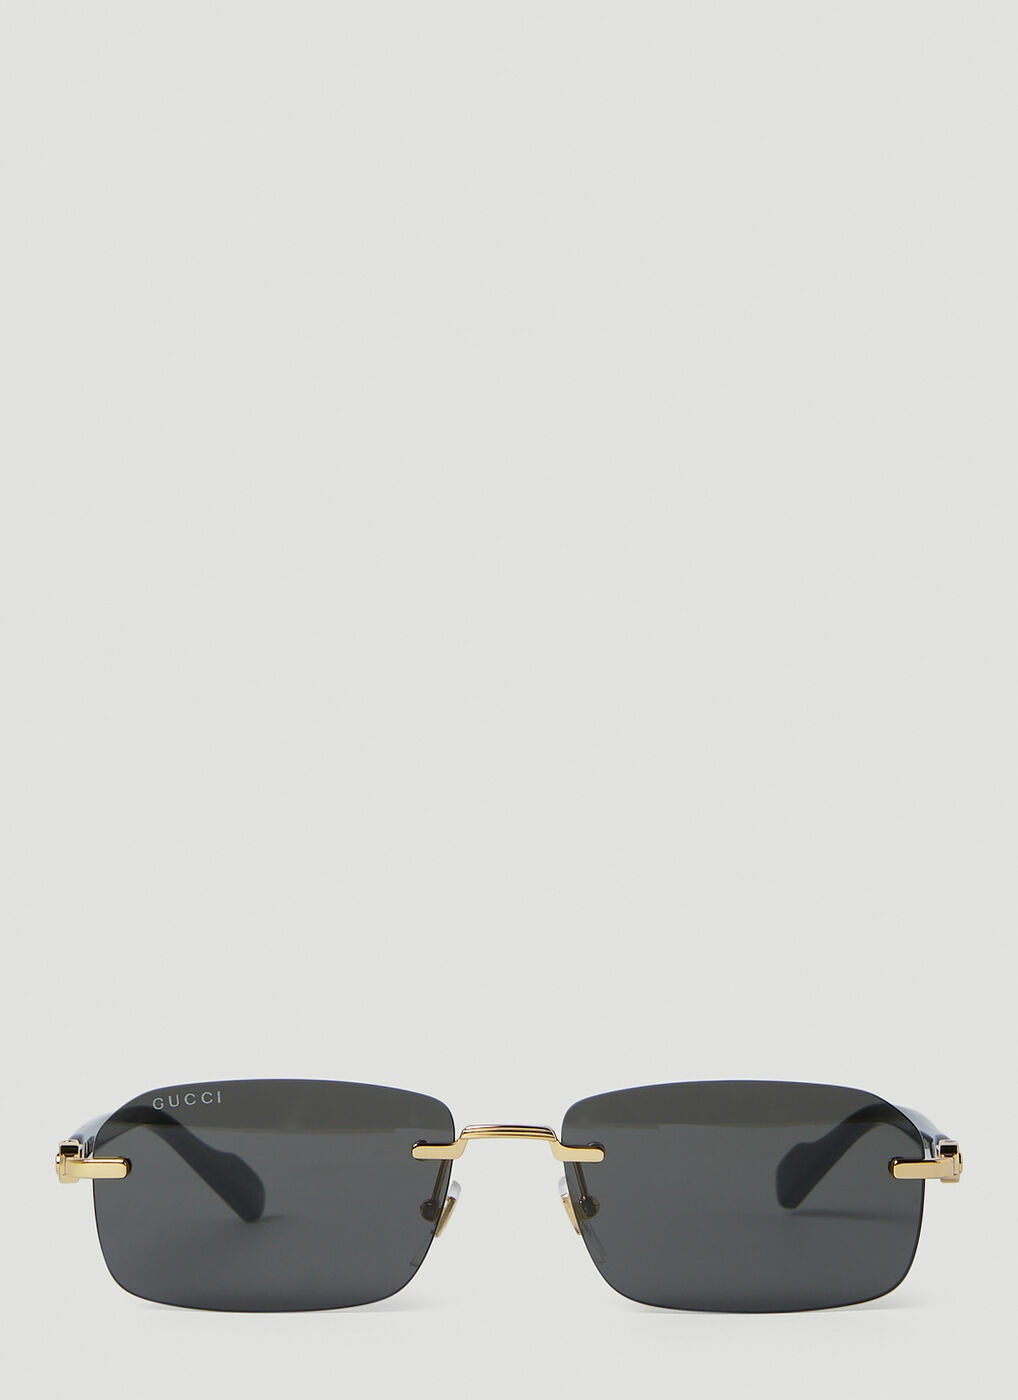 Gucci - GG Rapper Sunglasses in Black Gucci